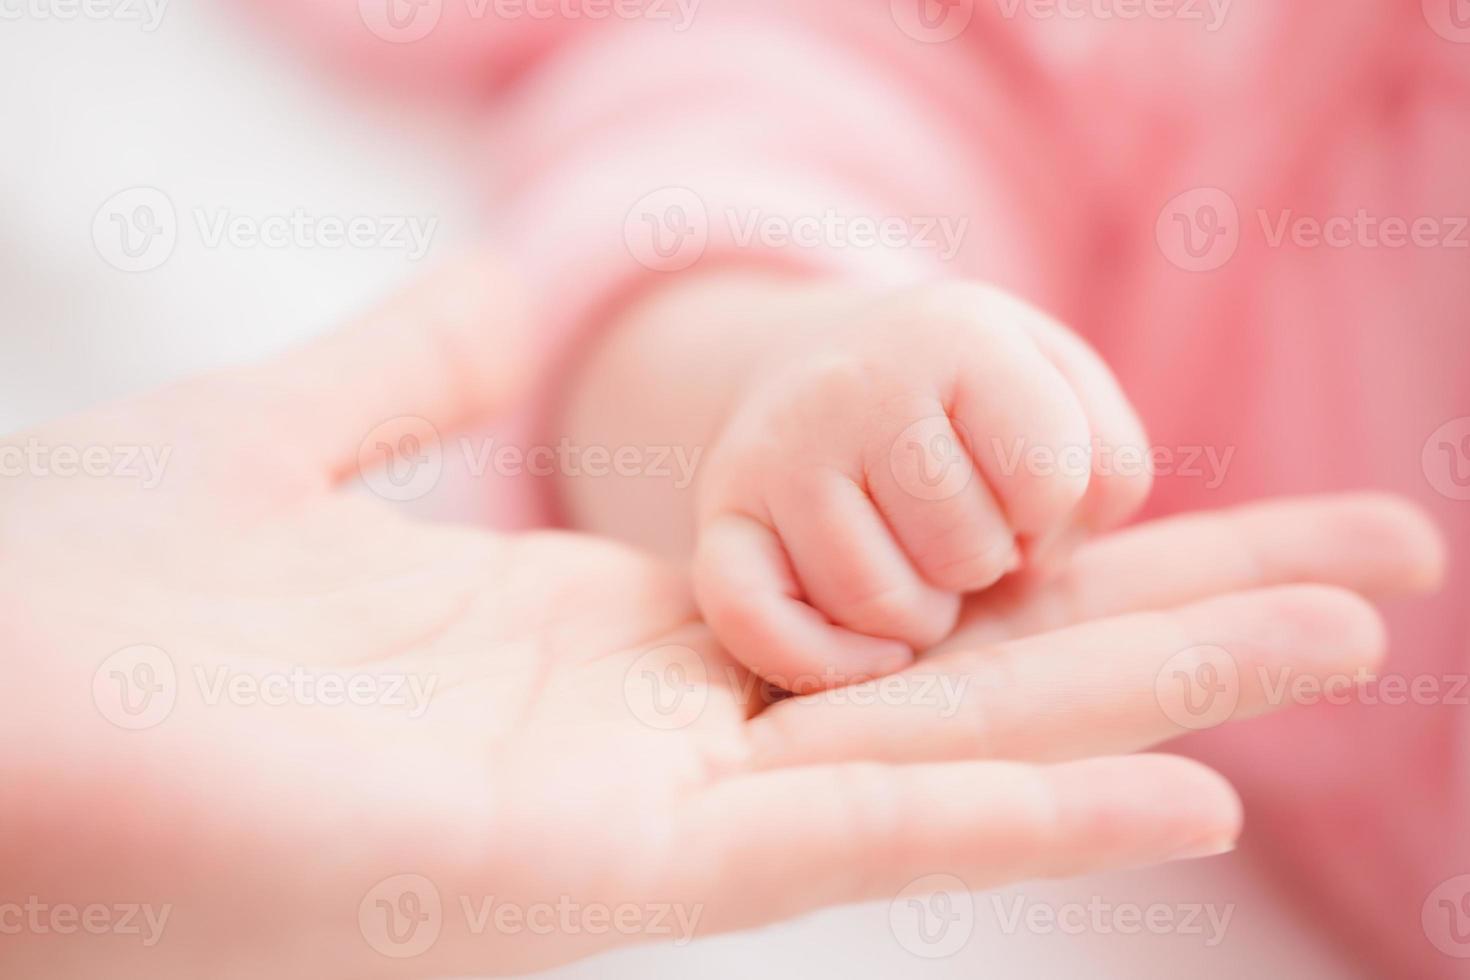 Nahaufnahme Mutter Händchen haltend neugeborenes Mädchen in einem Raum. entzückendes kind ruht auf weißen bettlaken und starrt friedlich in die kamera. Säuglings-, Gesundheitswesen und Pädiatrie, Säuglingskonzept. foto